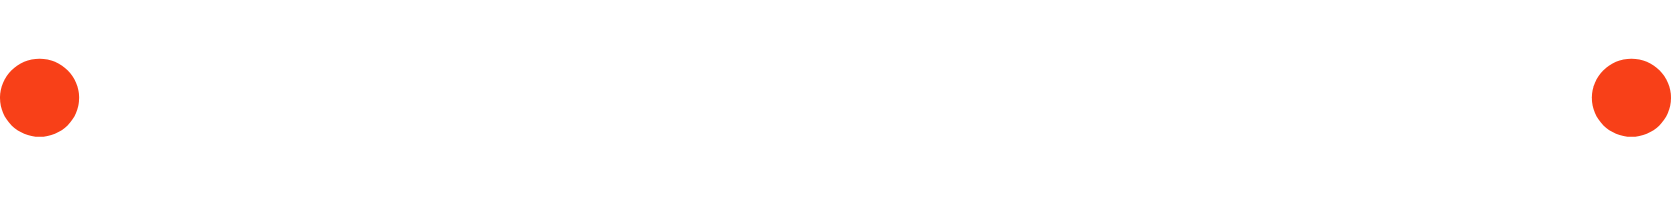 Aptiv logo large for dark backgrounds (transparent PNG)